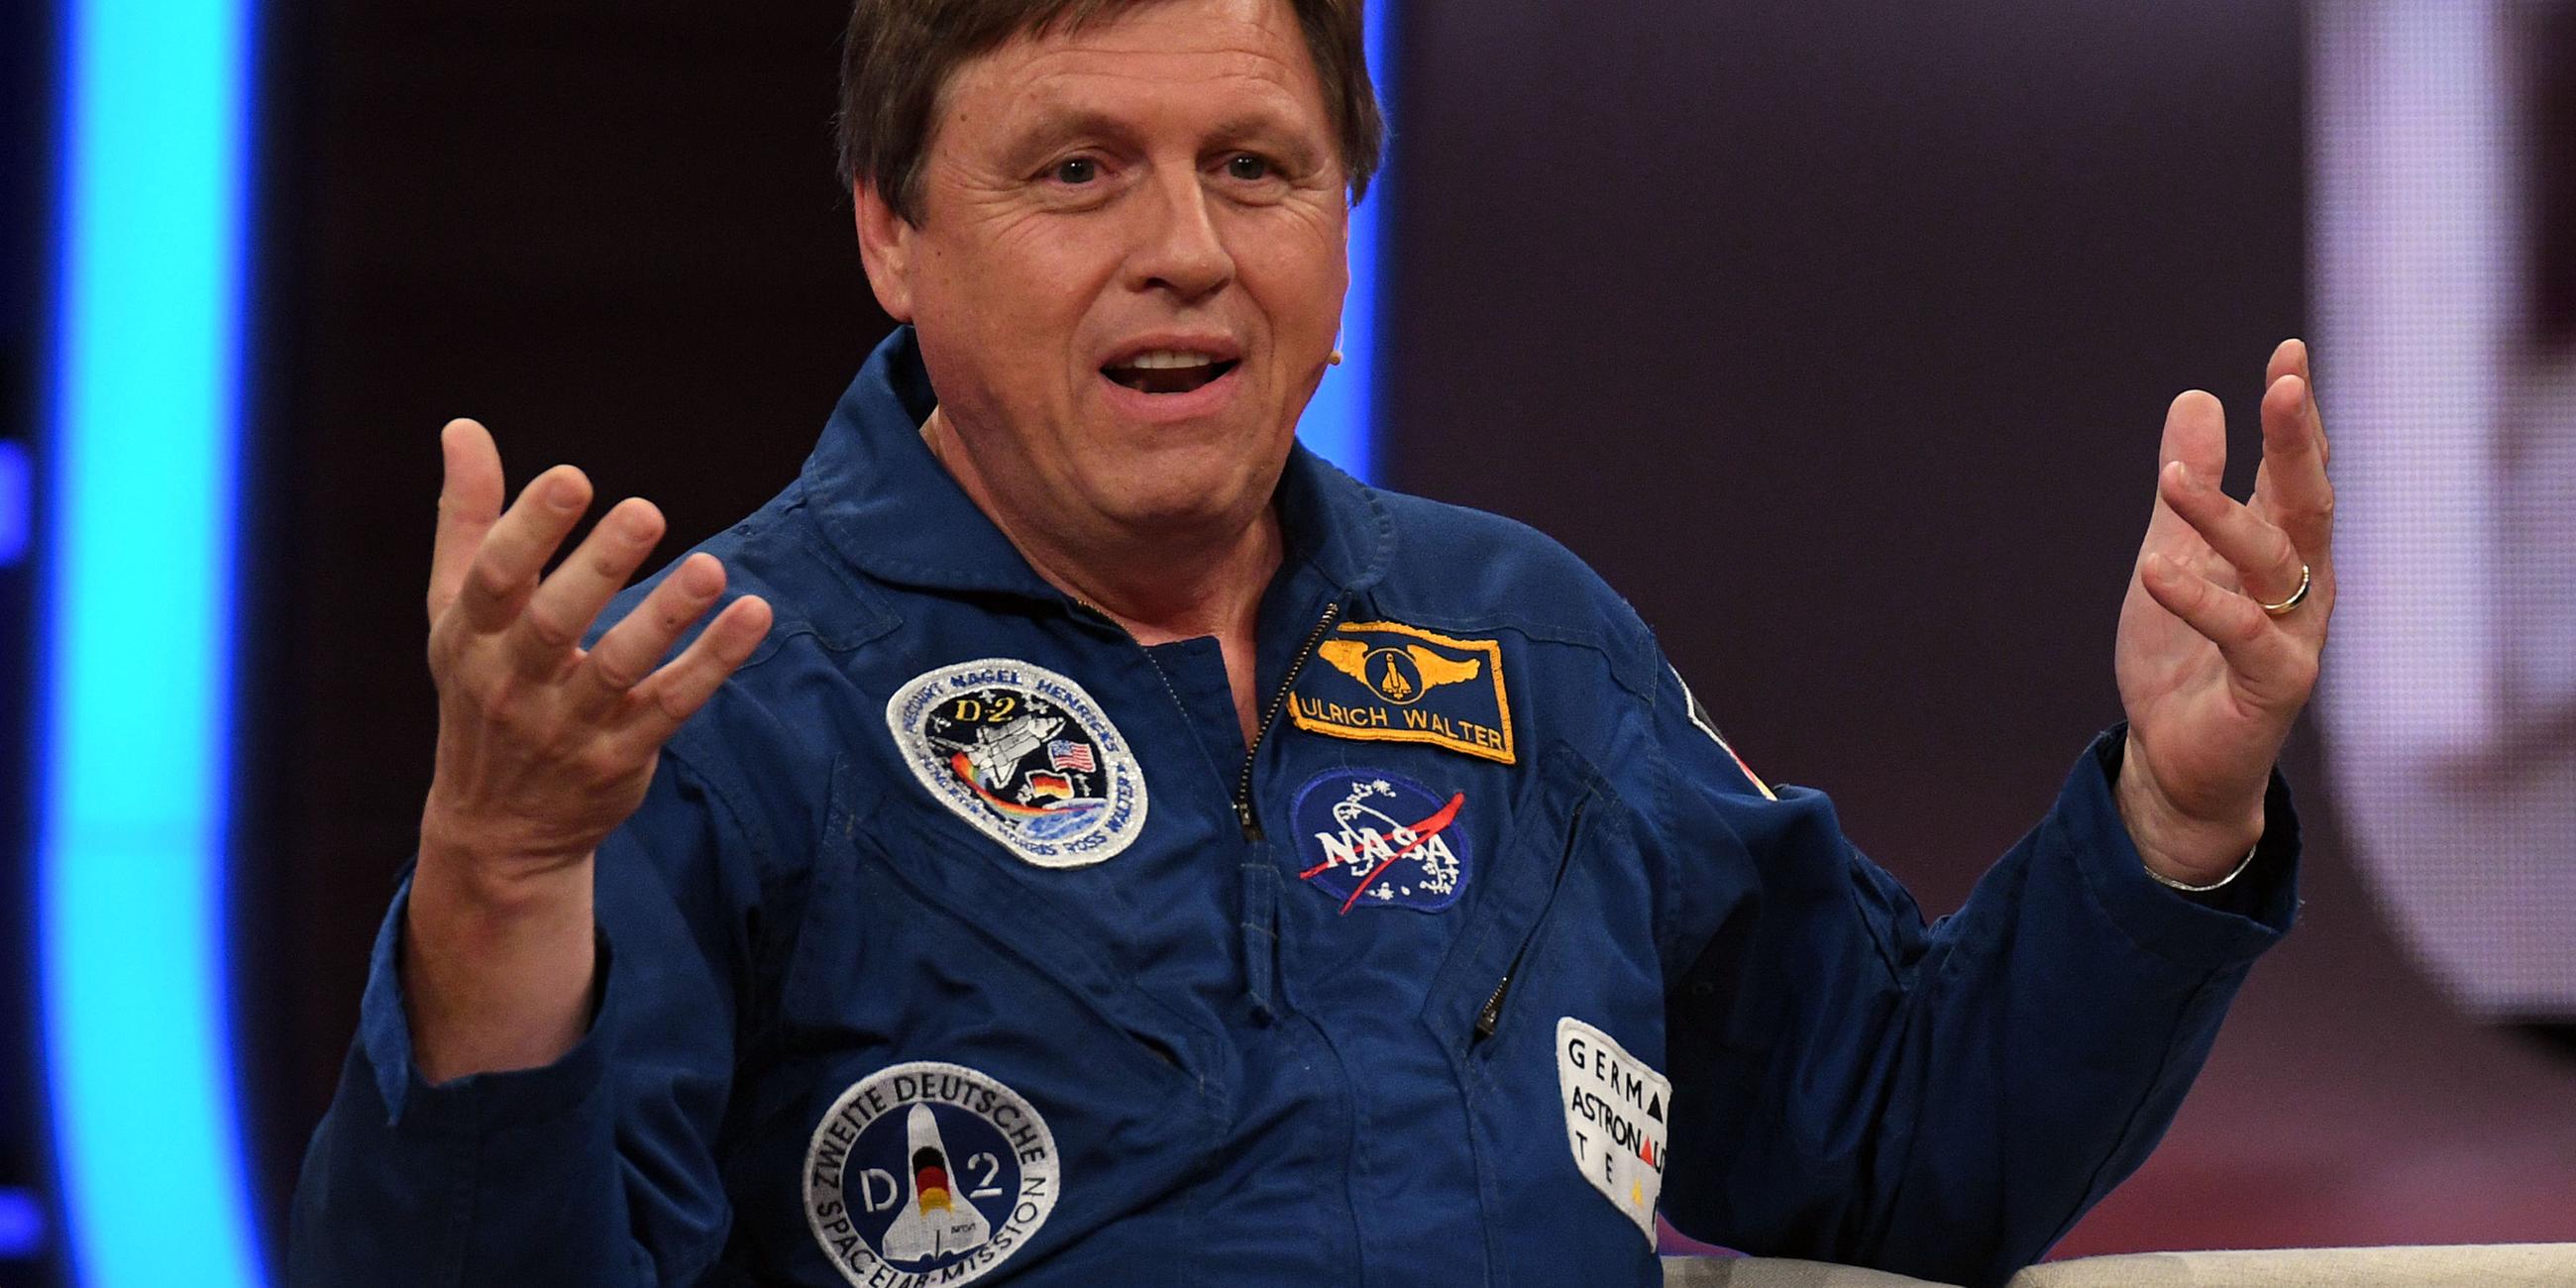 Der Astronaut Ulrich Waltersitzt auf einer Couch, gestikuliert und spricht.